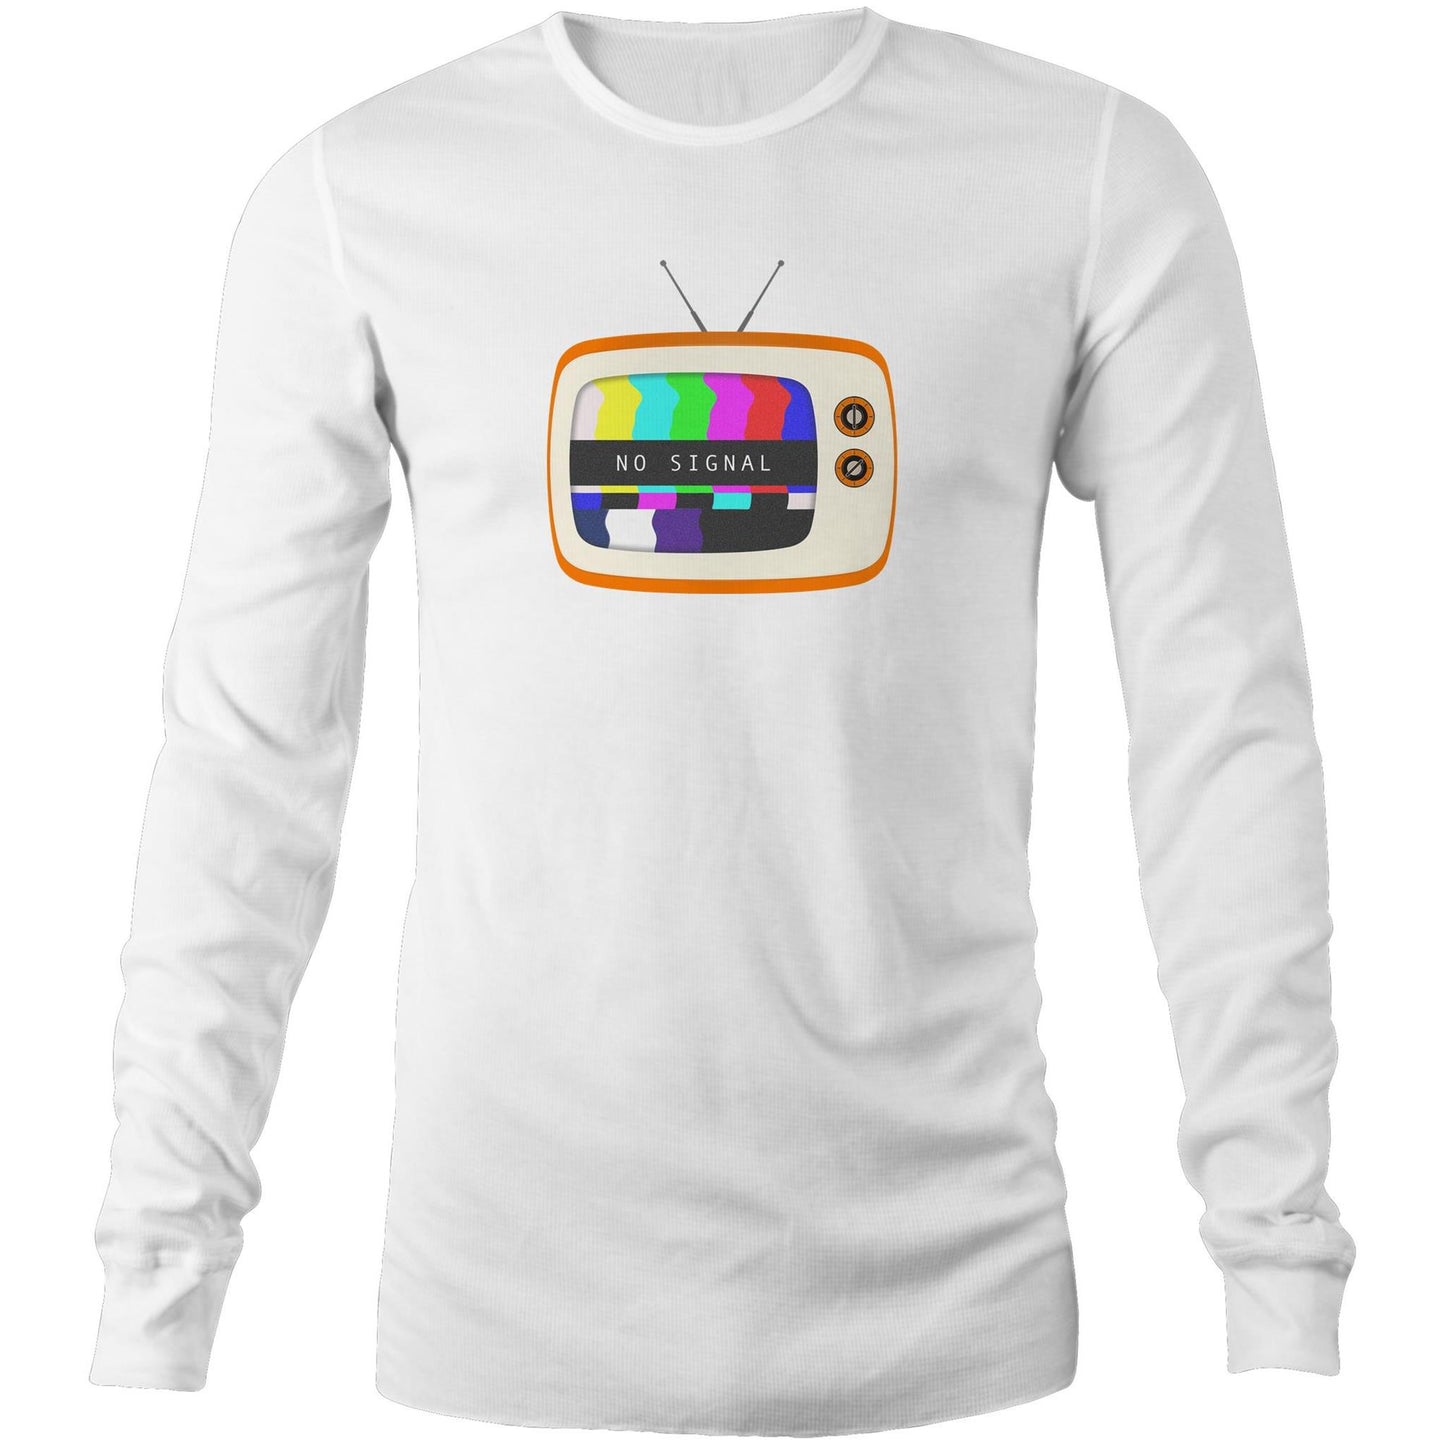 Retro Television, No Signal - Long Sleeve T-Shirt White Unisex Long Sleeve T-shirt Retro